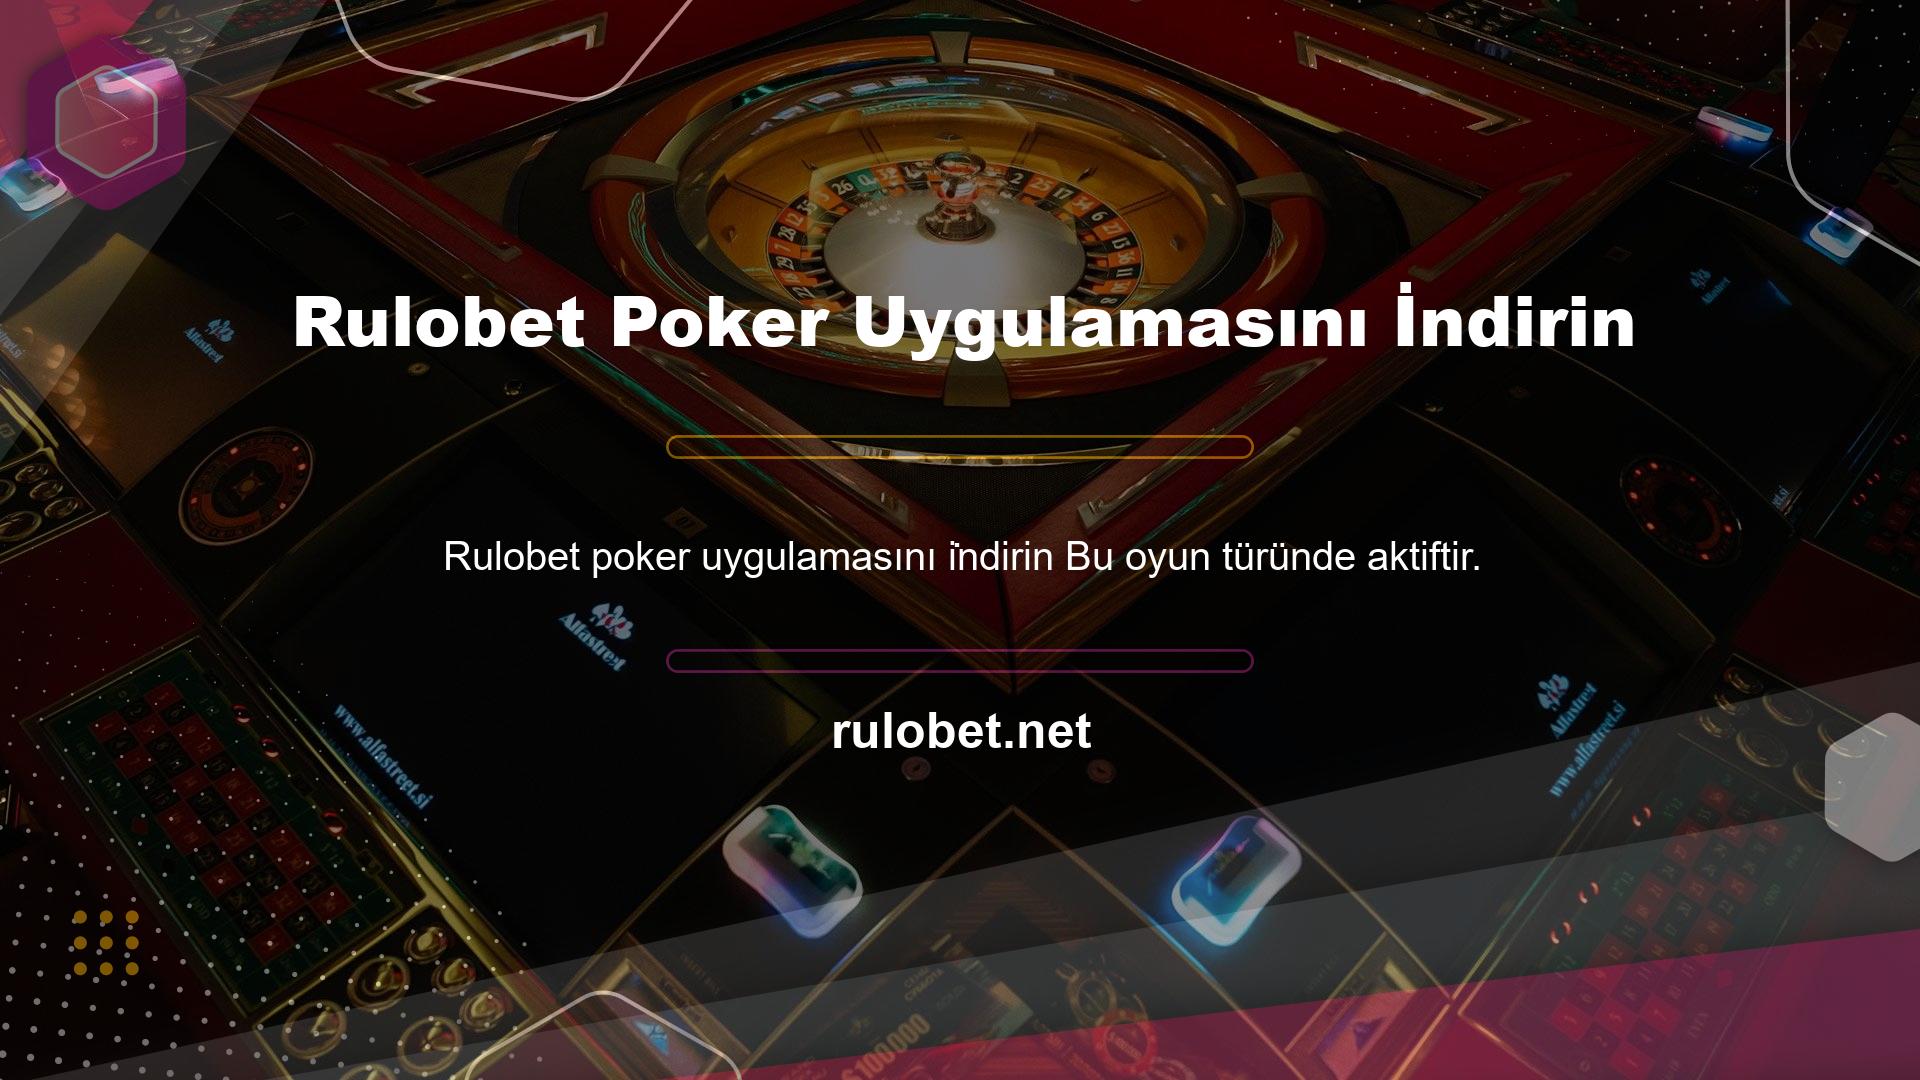 Rulobet Poker Uygulamasını İndirin